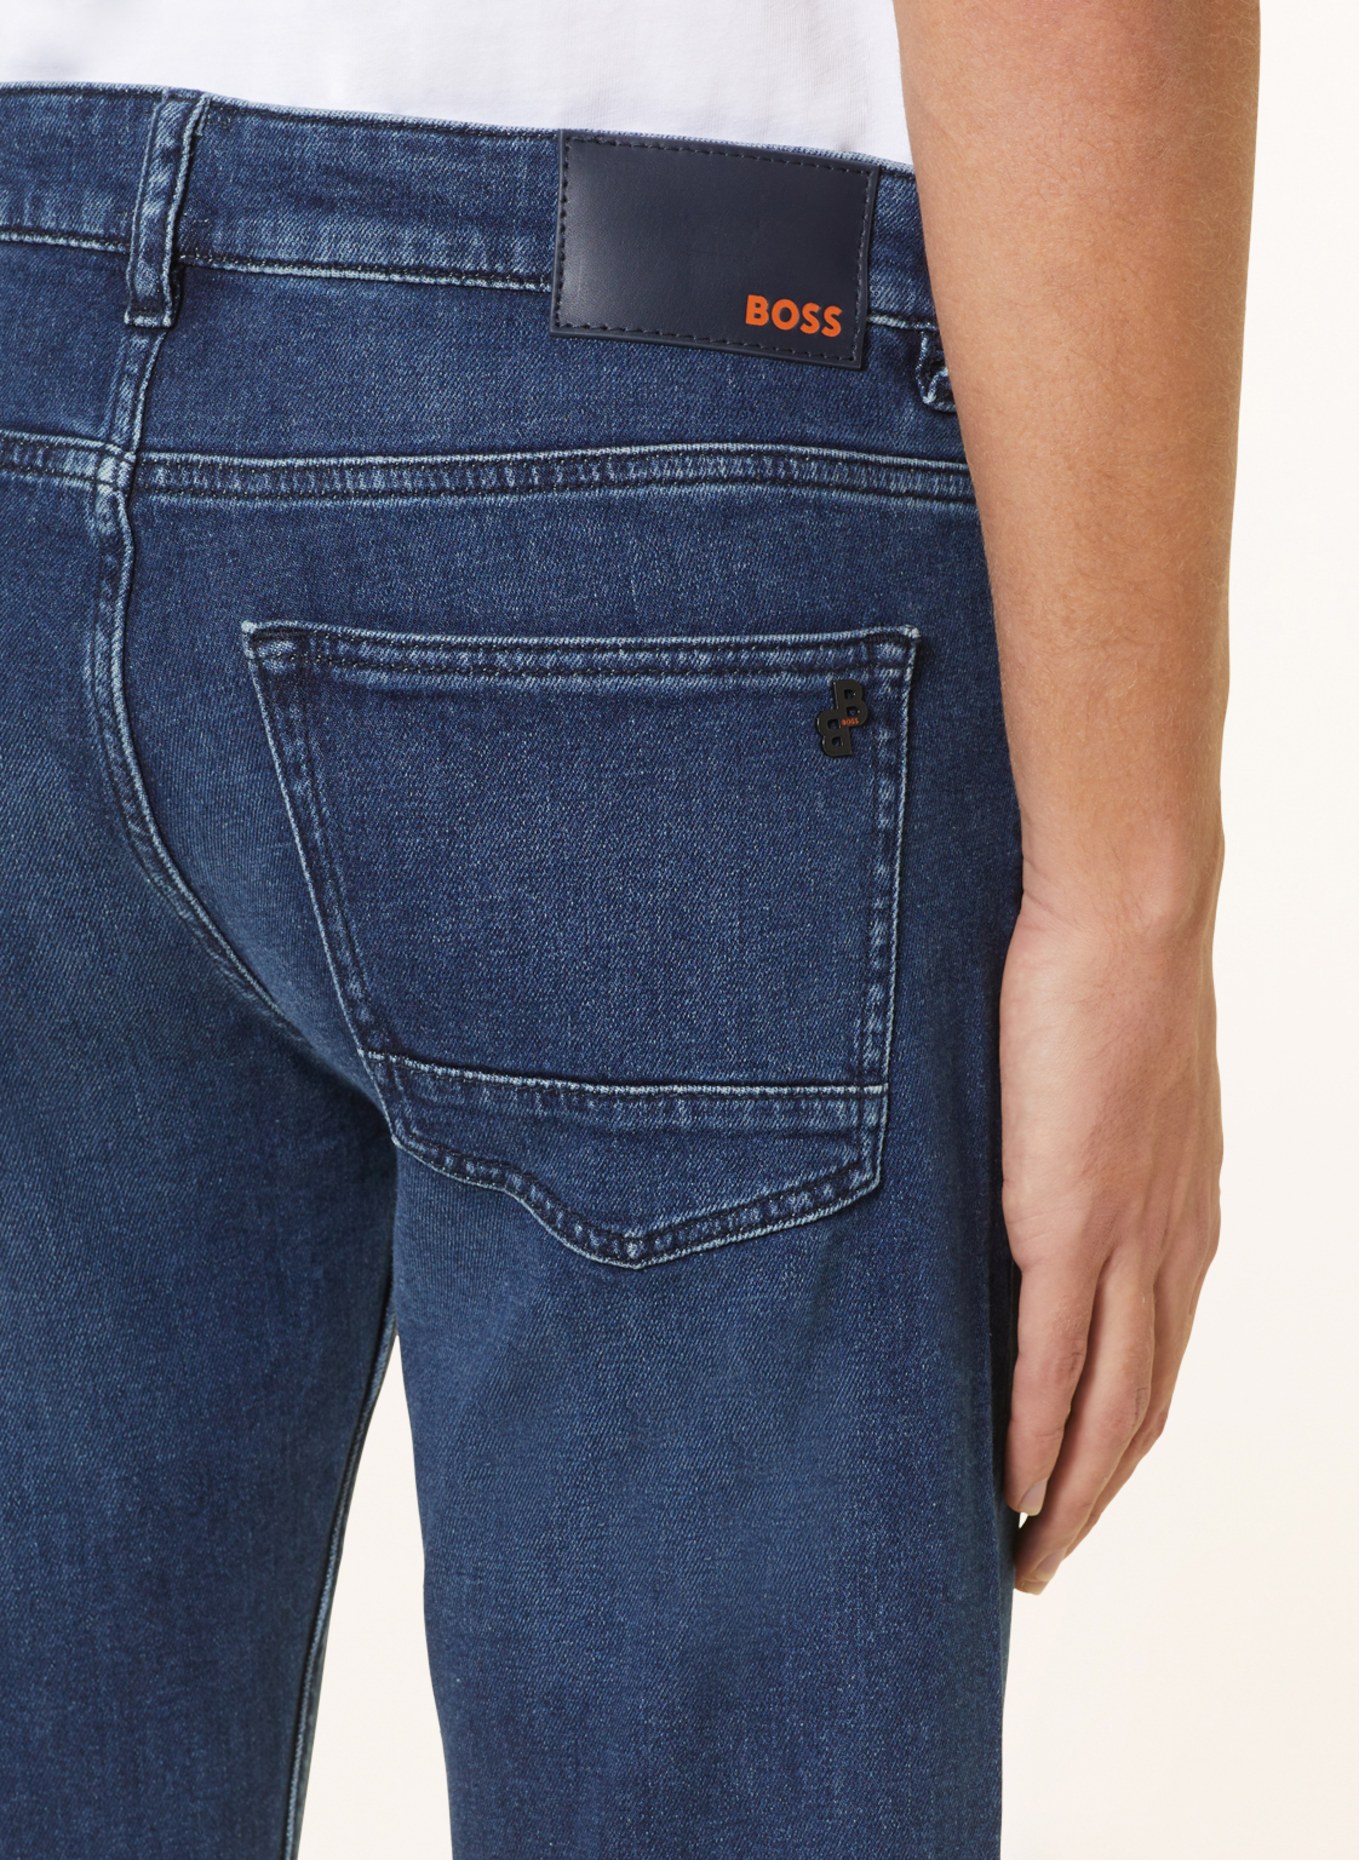 BOSS Jeans DELAWARE Slim Fit, Farbe: 414 NAVY (Bild 5)